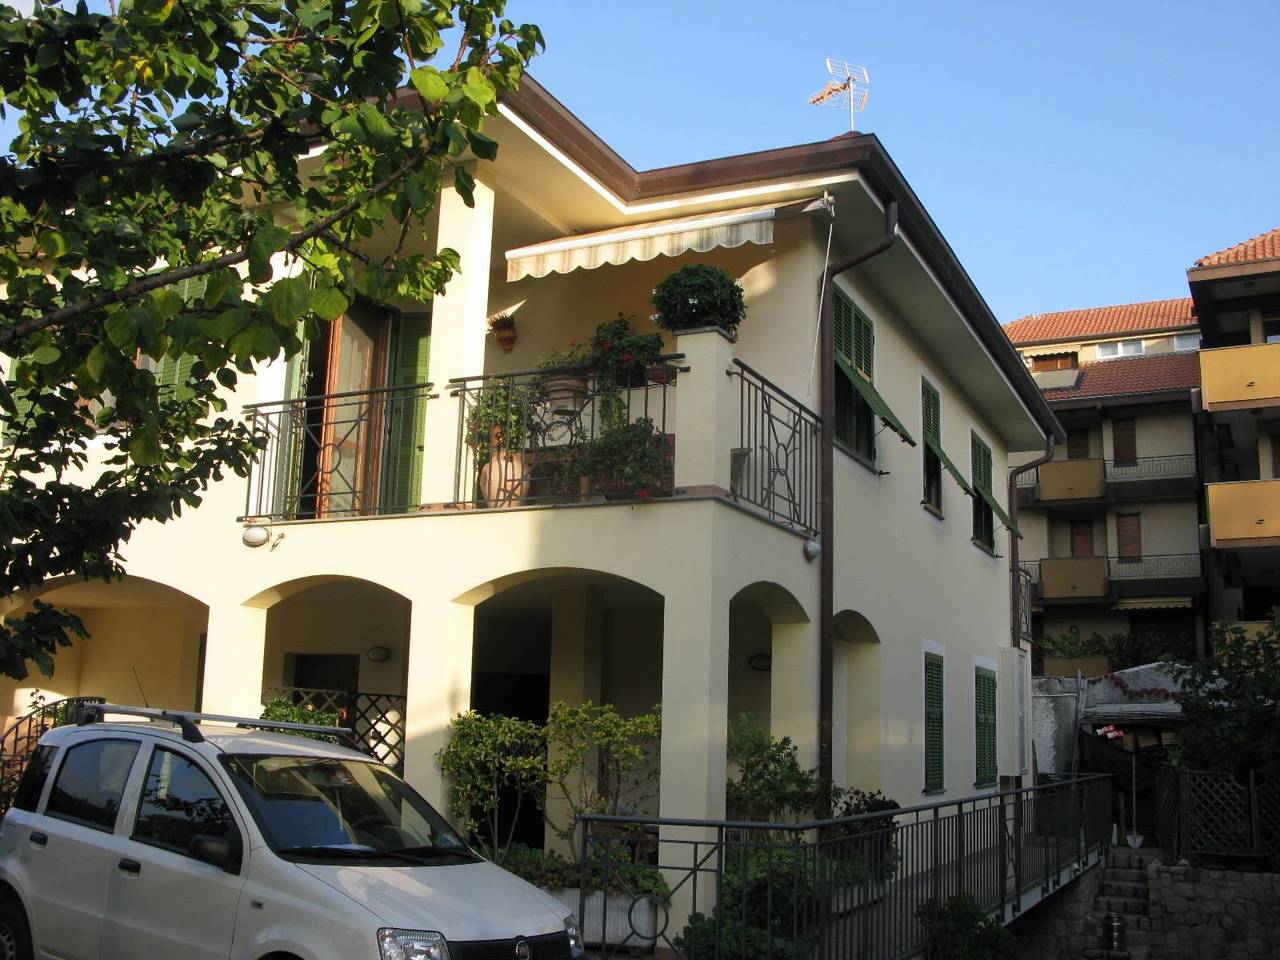 For sale villa in city Bordighera Liguria